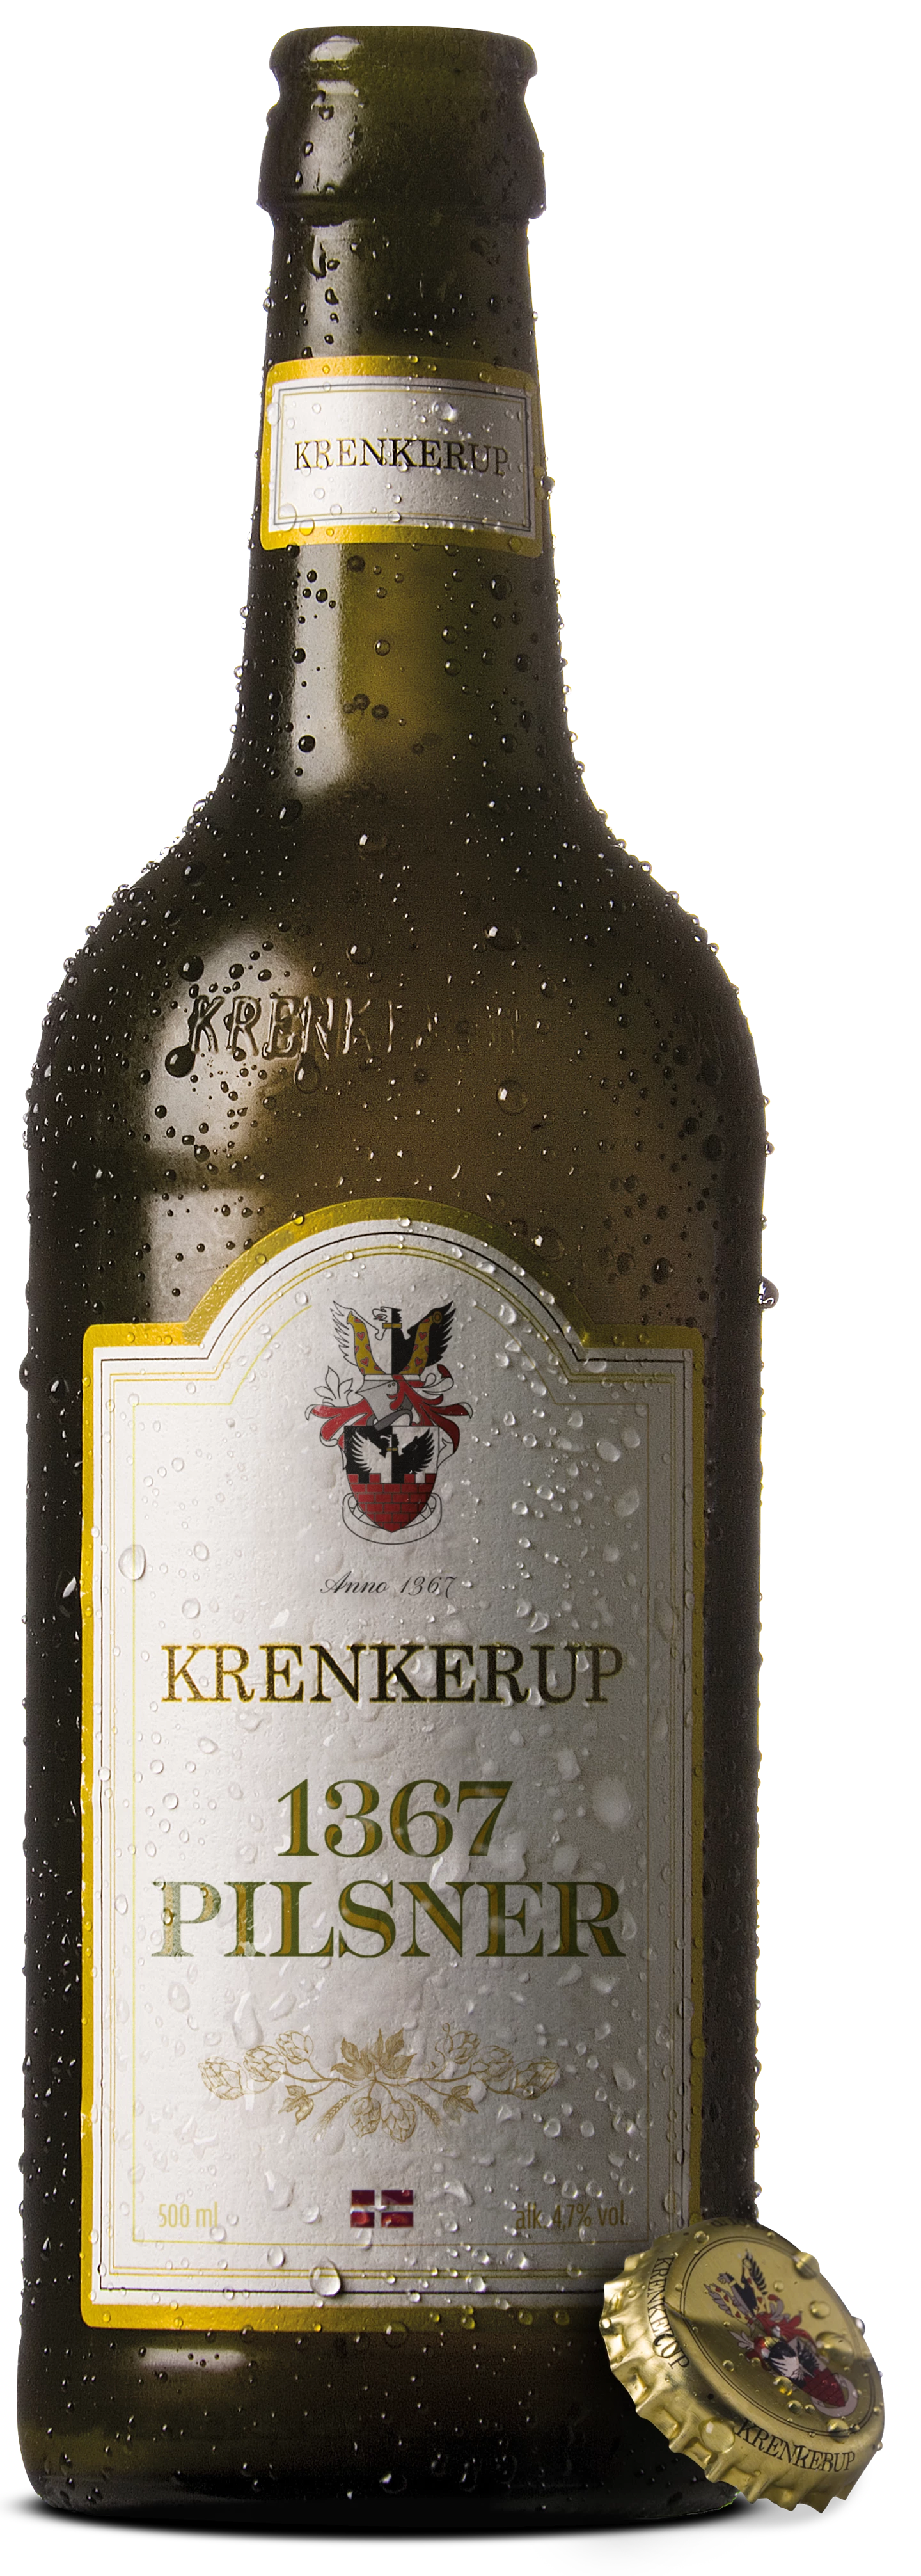 Løgismose Delikatesser Krenkerup øl 1367 Premium Pilsner 4,7% 50cl - 200152